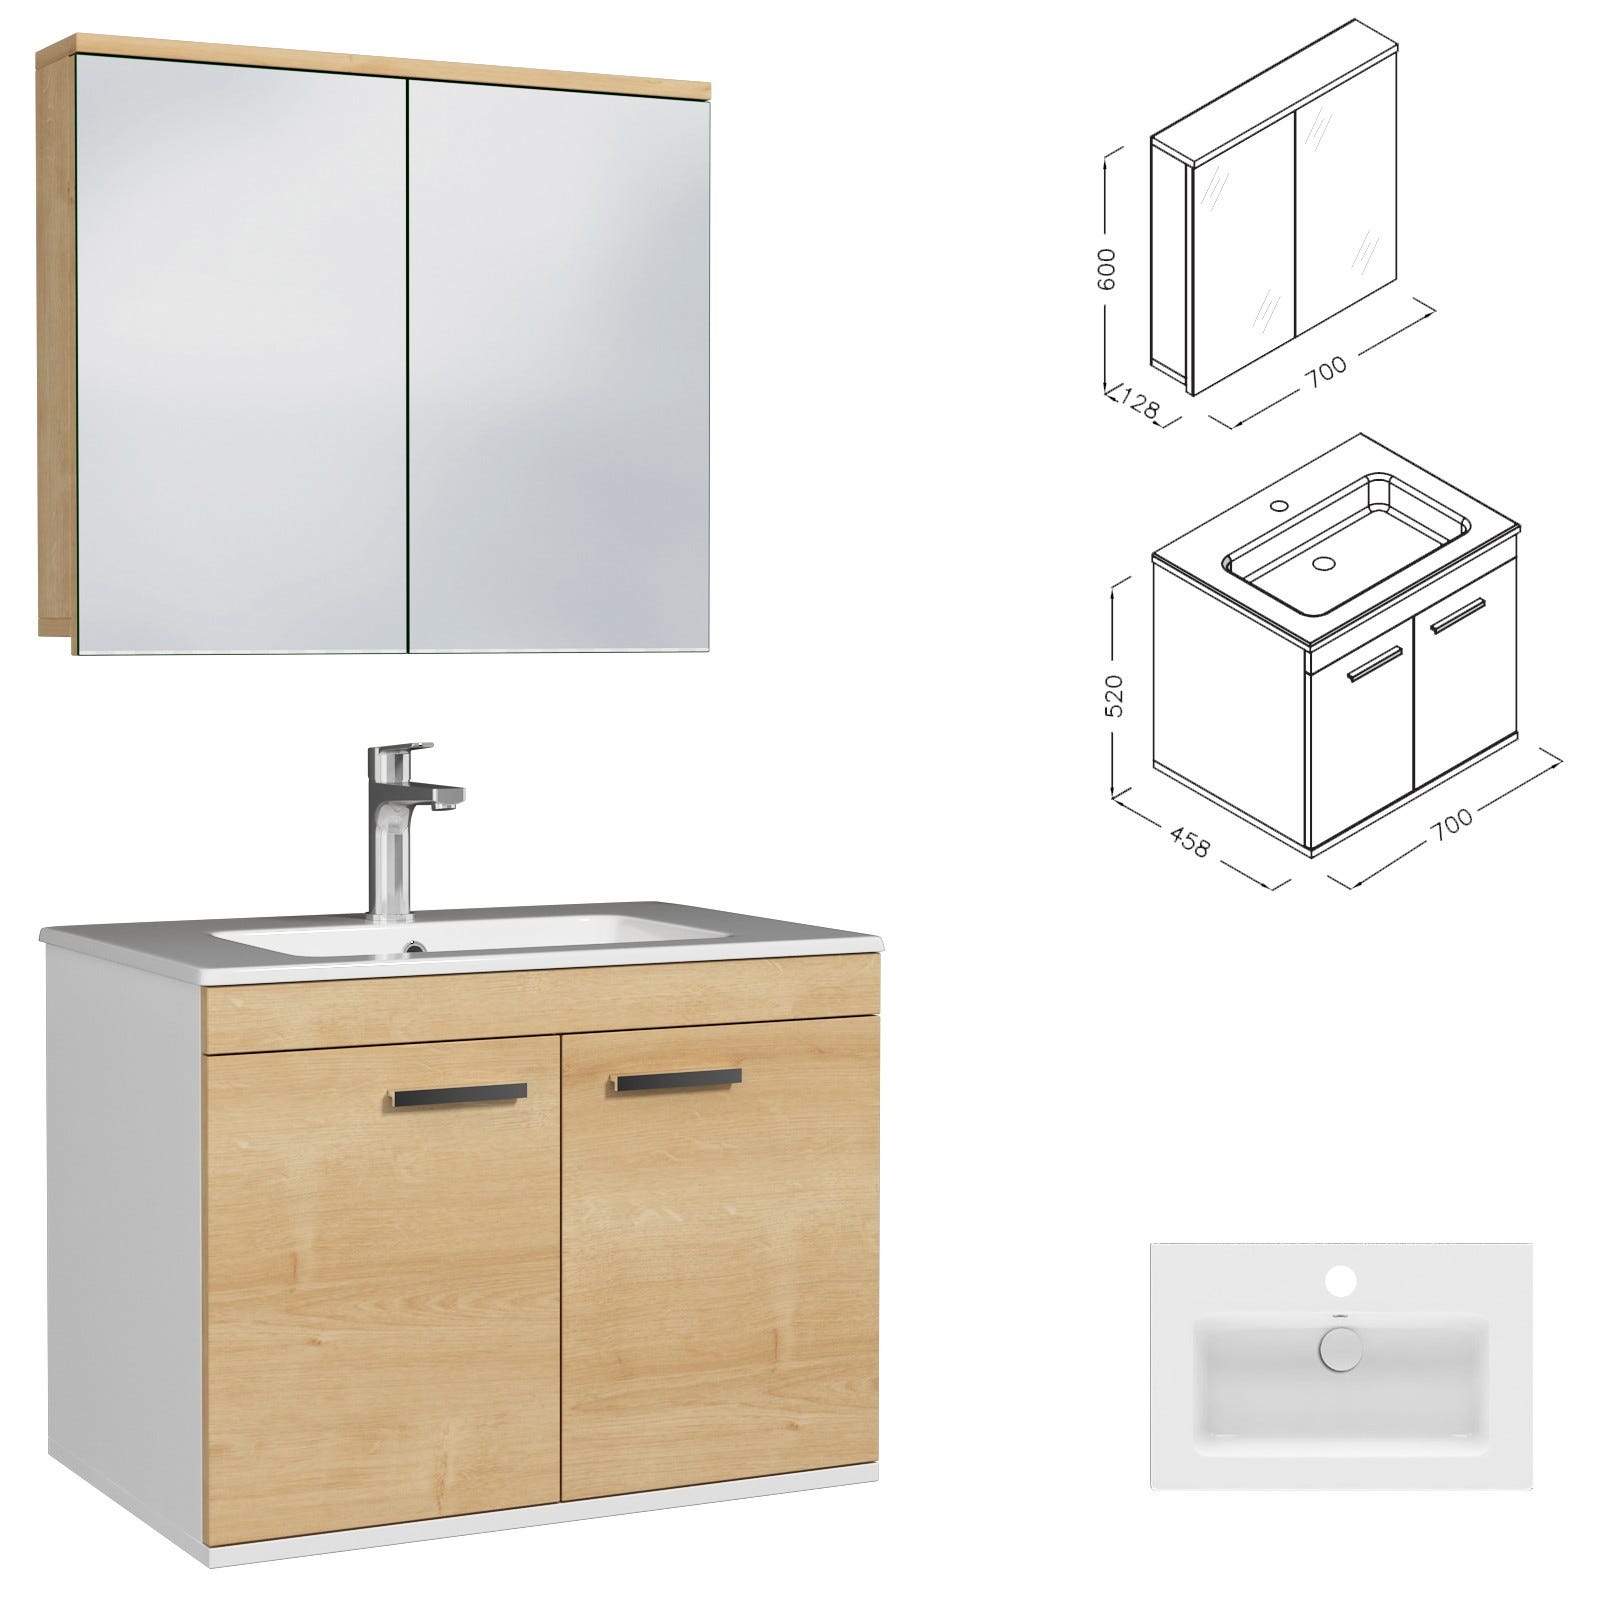 RUBITE Meuble salle de bain simple vasque 2 portes chêne clair largeur 70 cm + miroir armoire 2